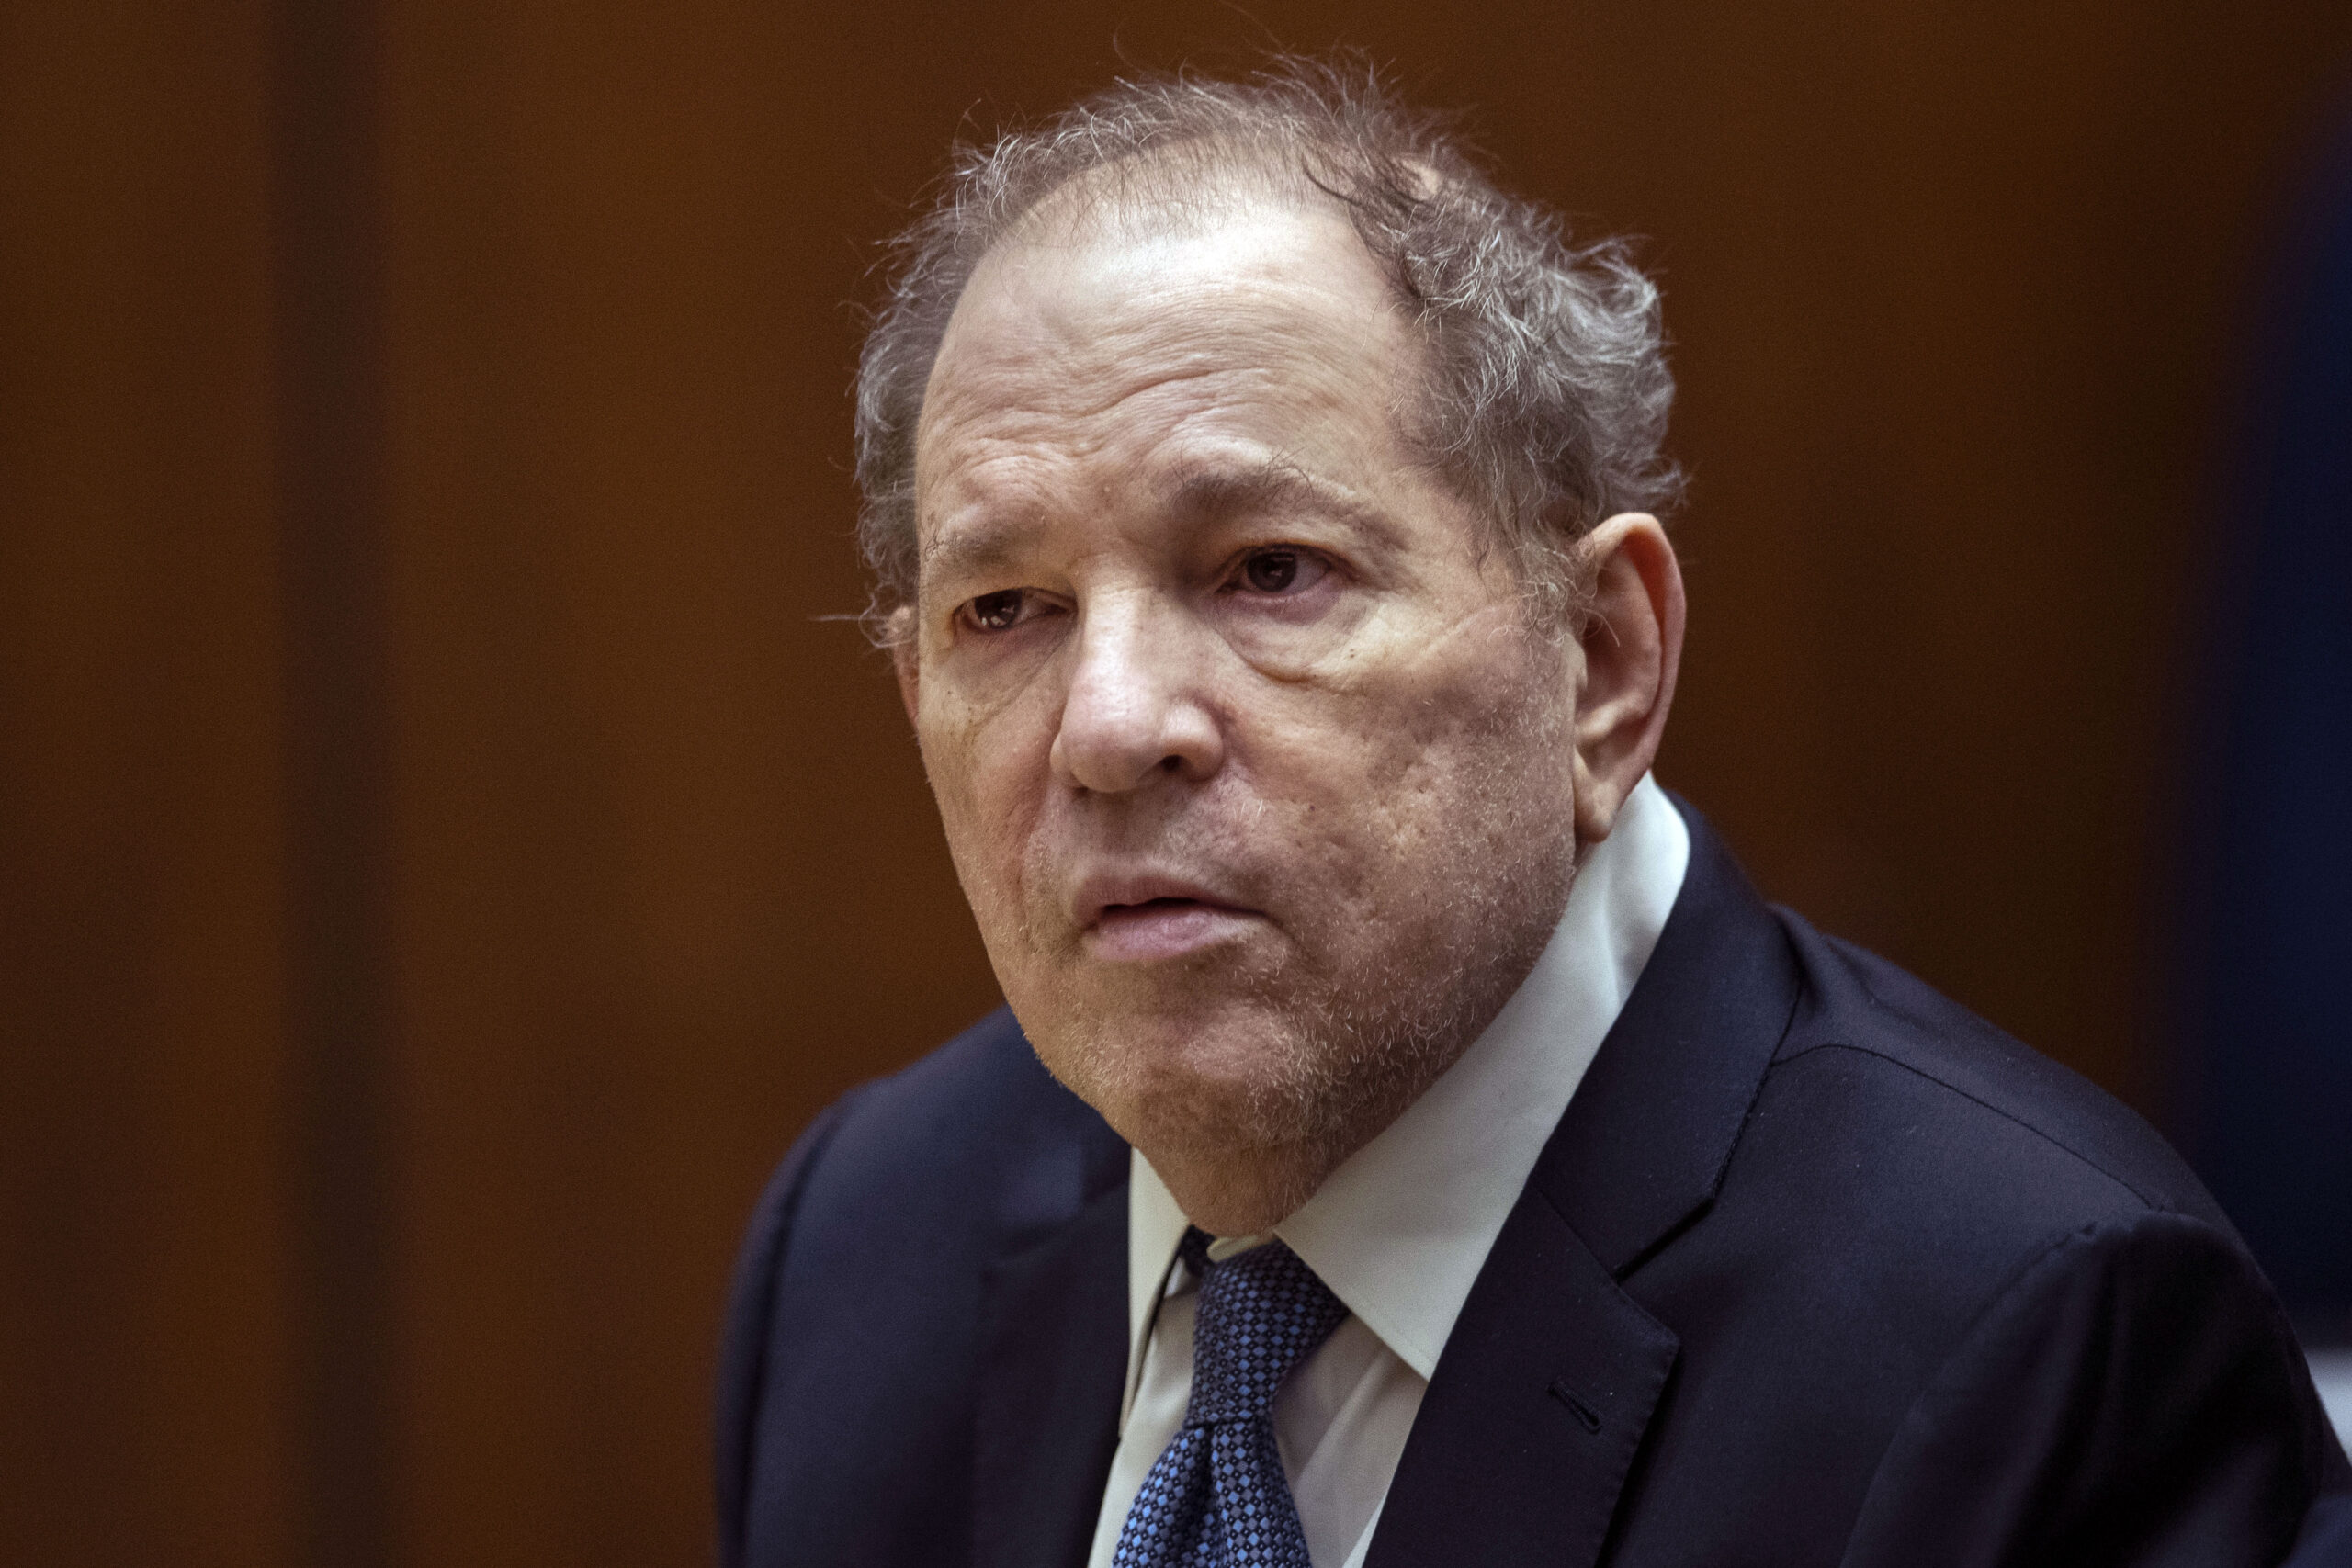 Der verurteilte Sexualstraftäter und ehemalige Filmproduzent Harvey Weinstein bei einer gerichtlichen Anhörung im Oktober 2022.